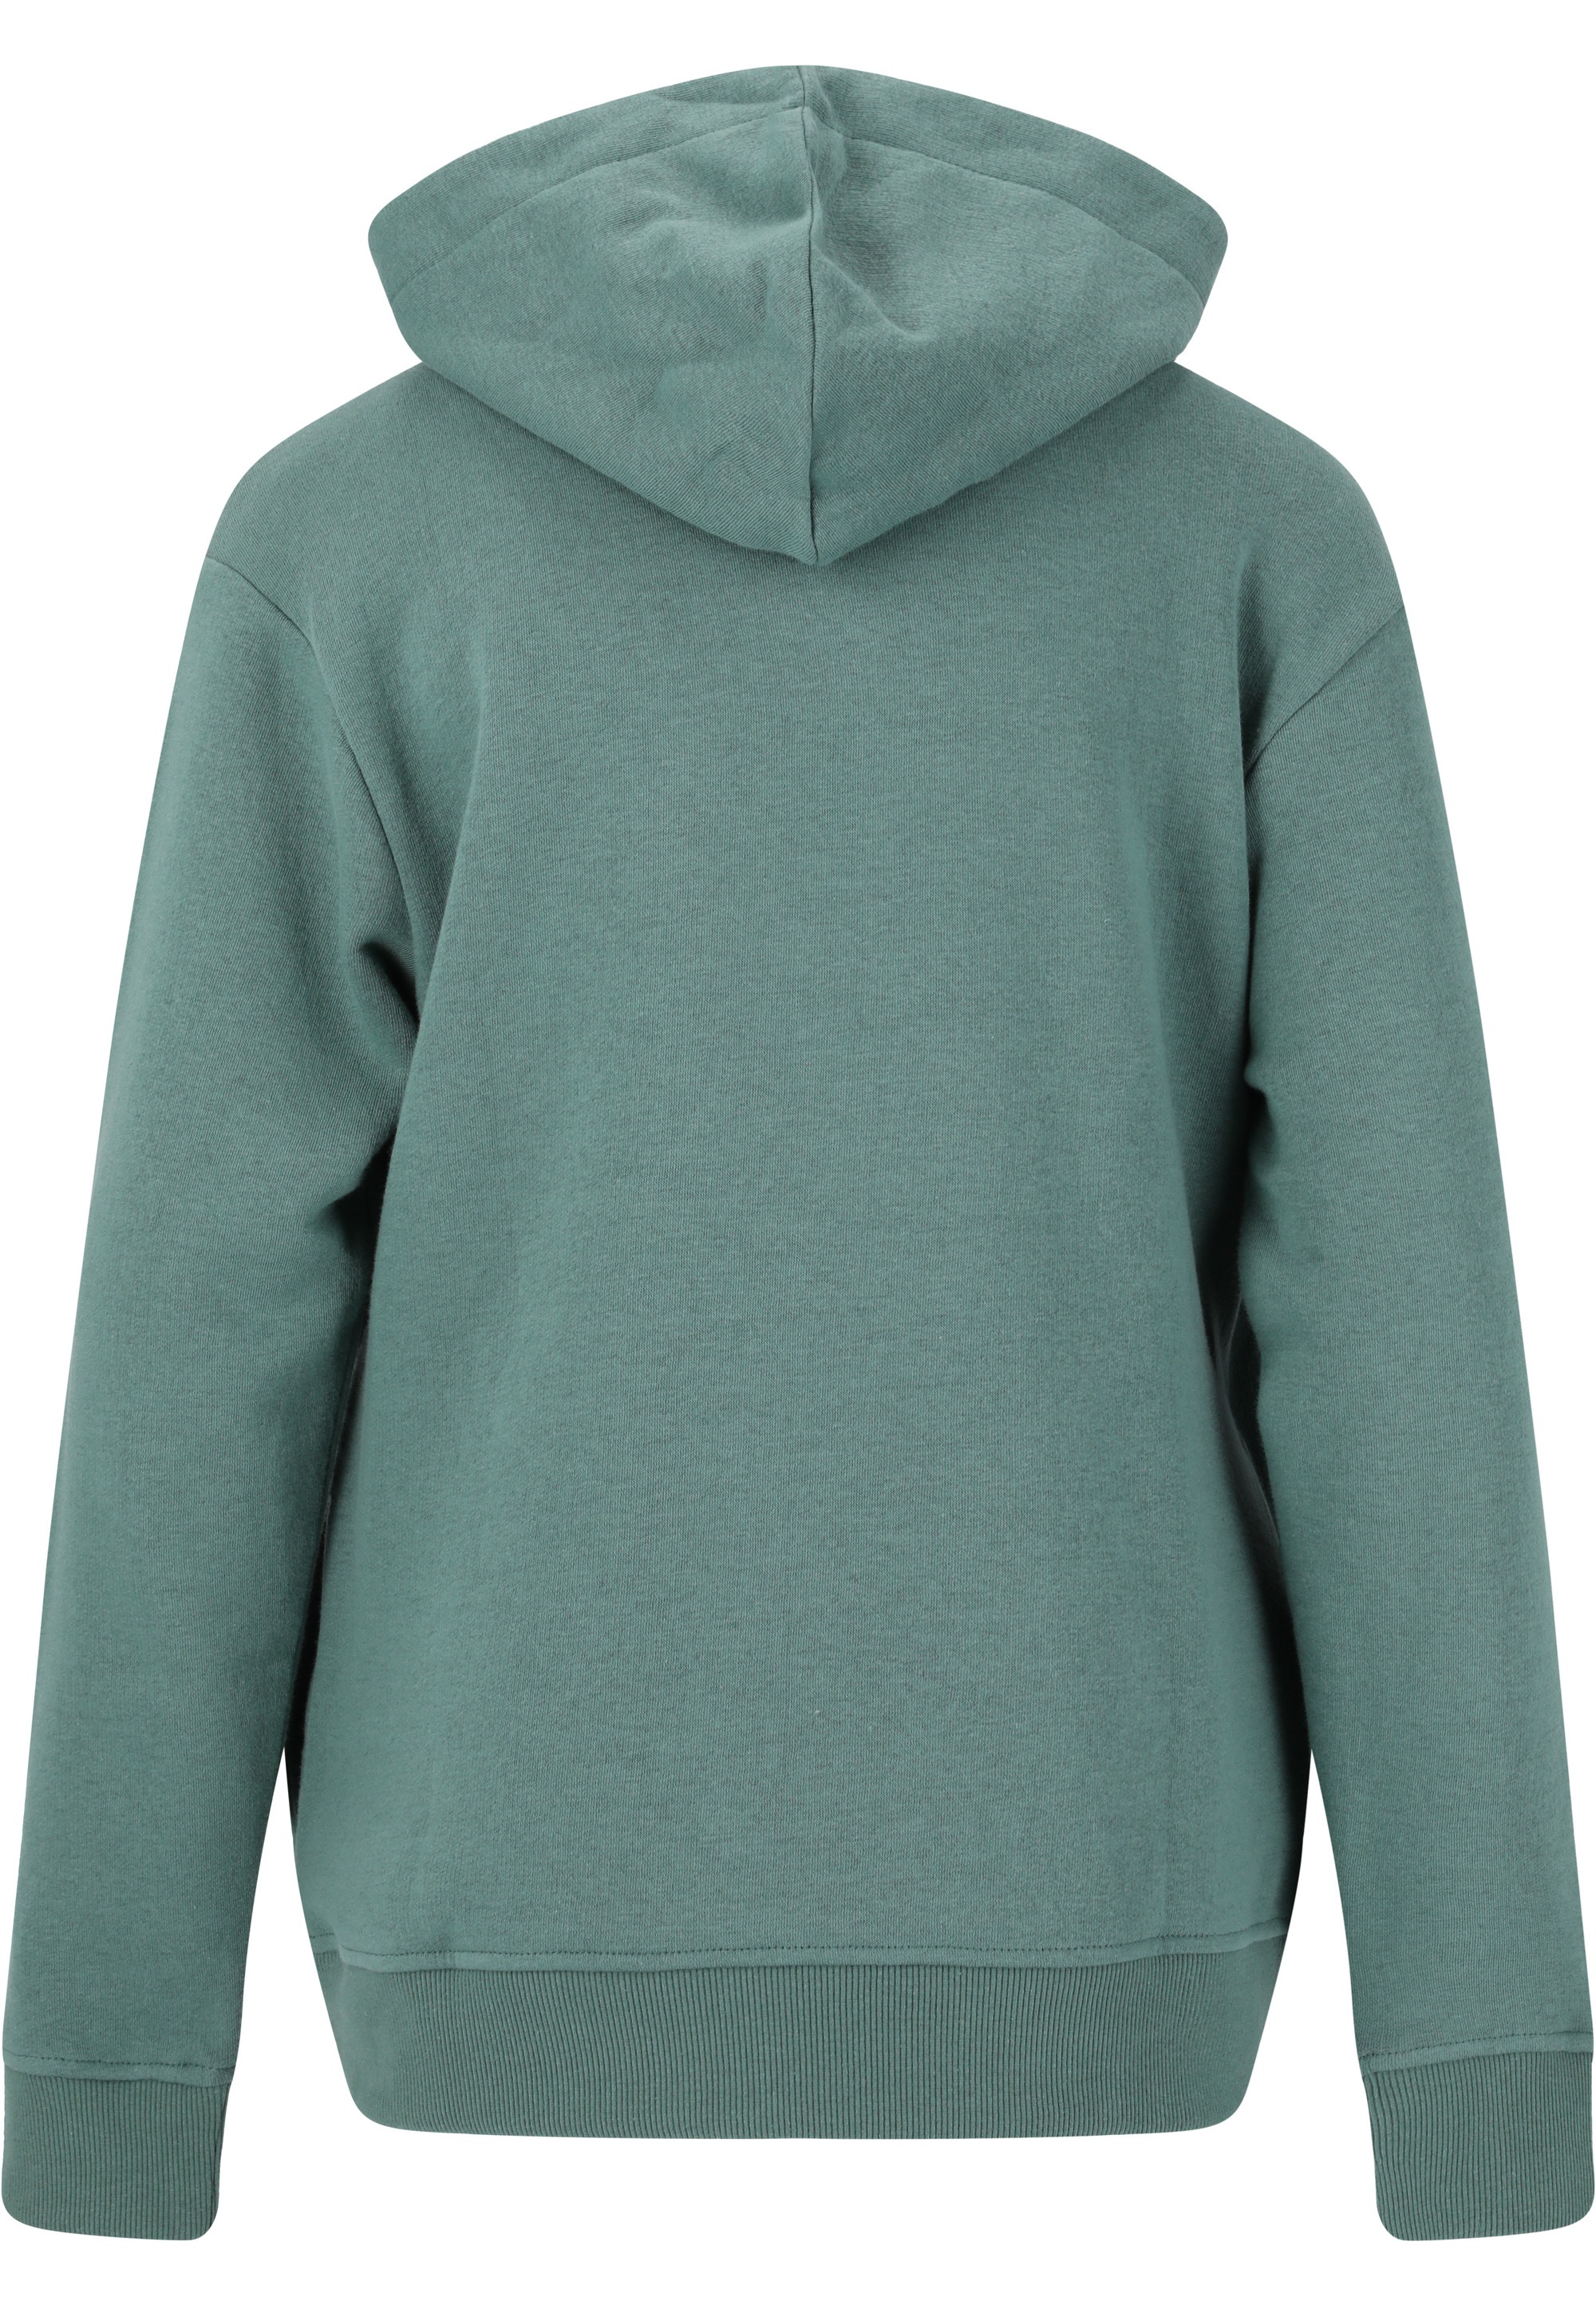 ENDURANCE Sweatshirt »Glakrum«, mit sportlichem Markenprint